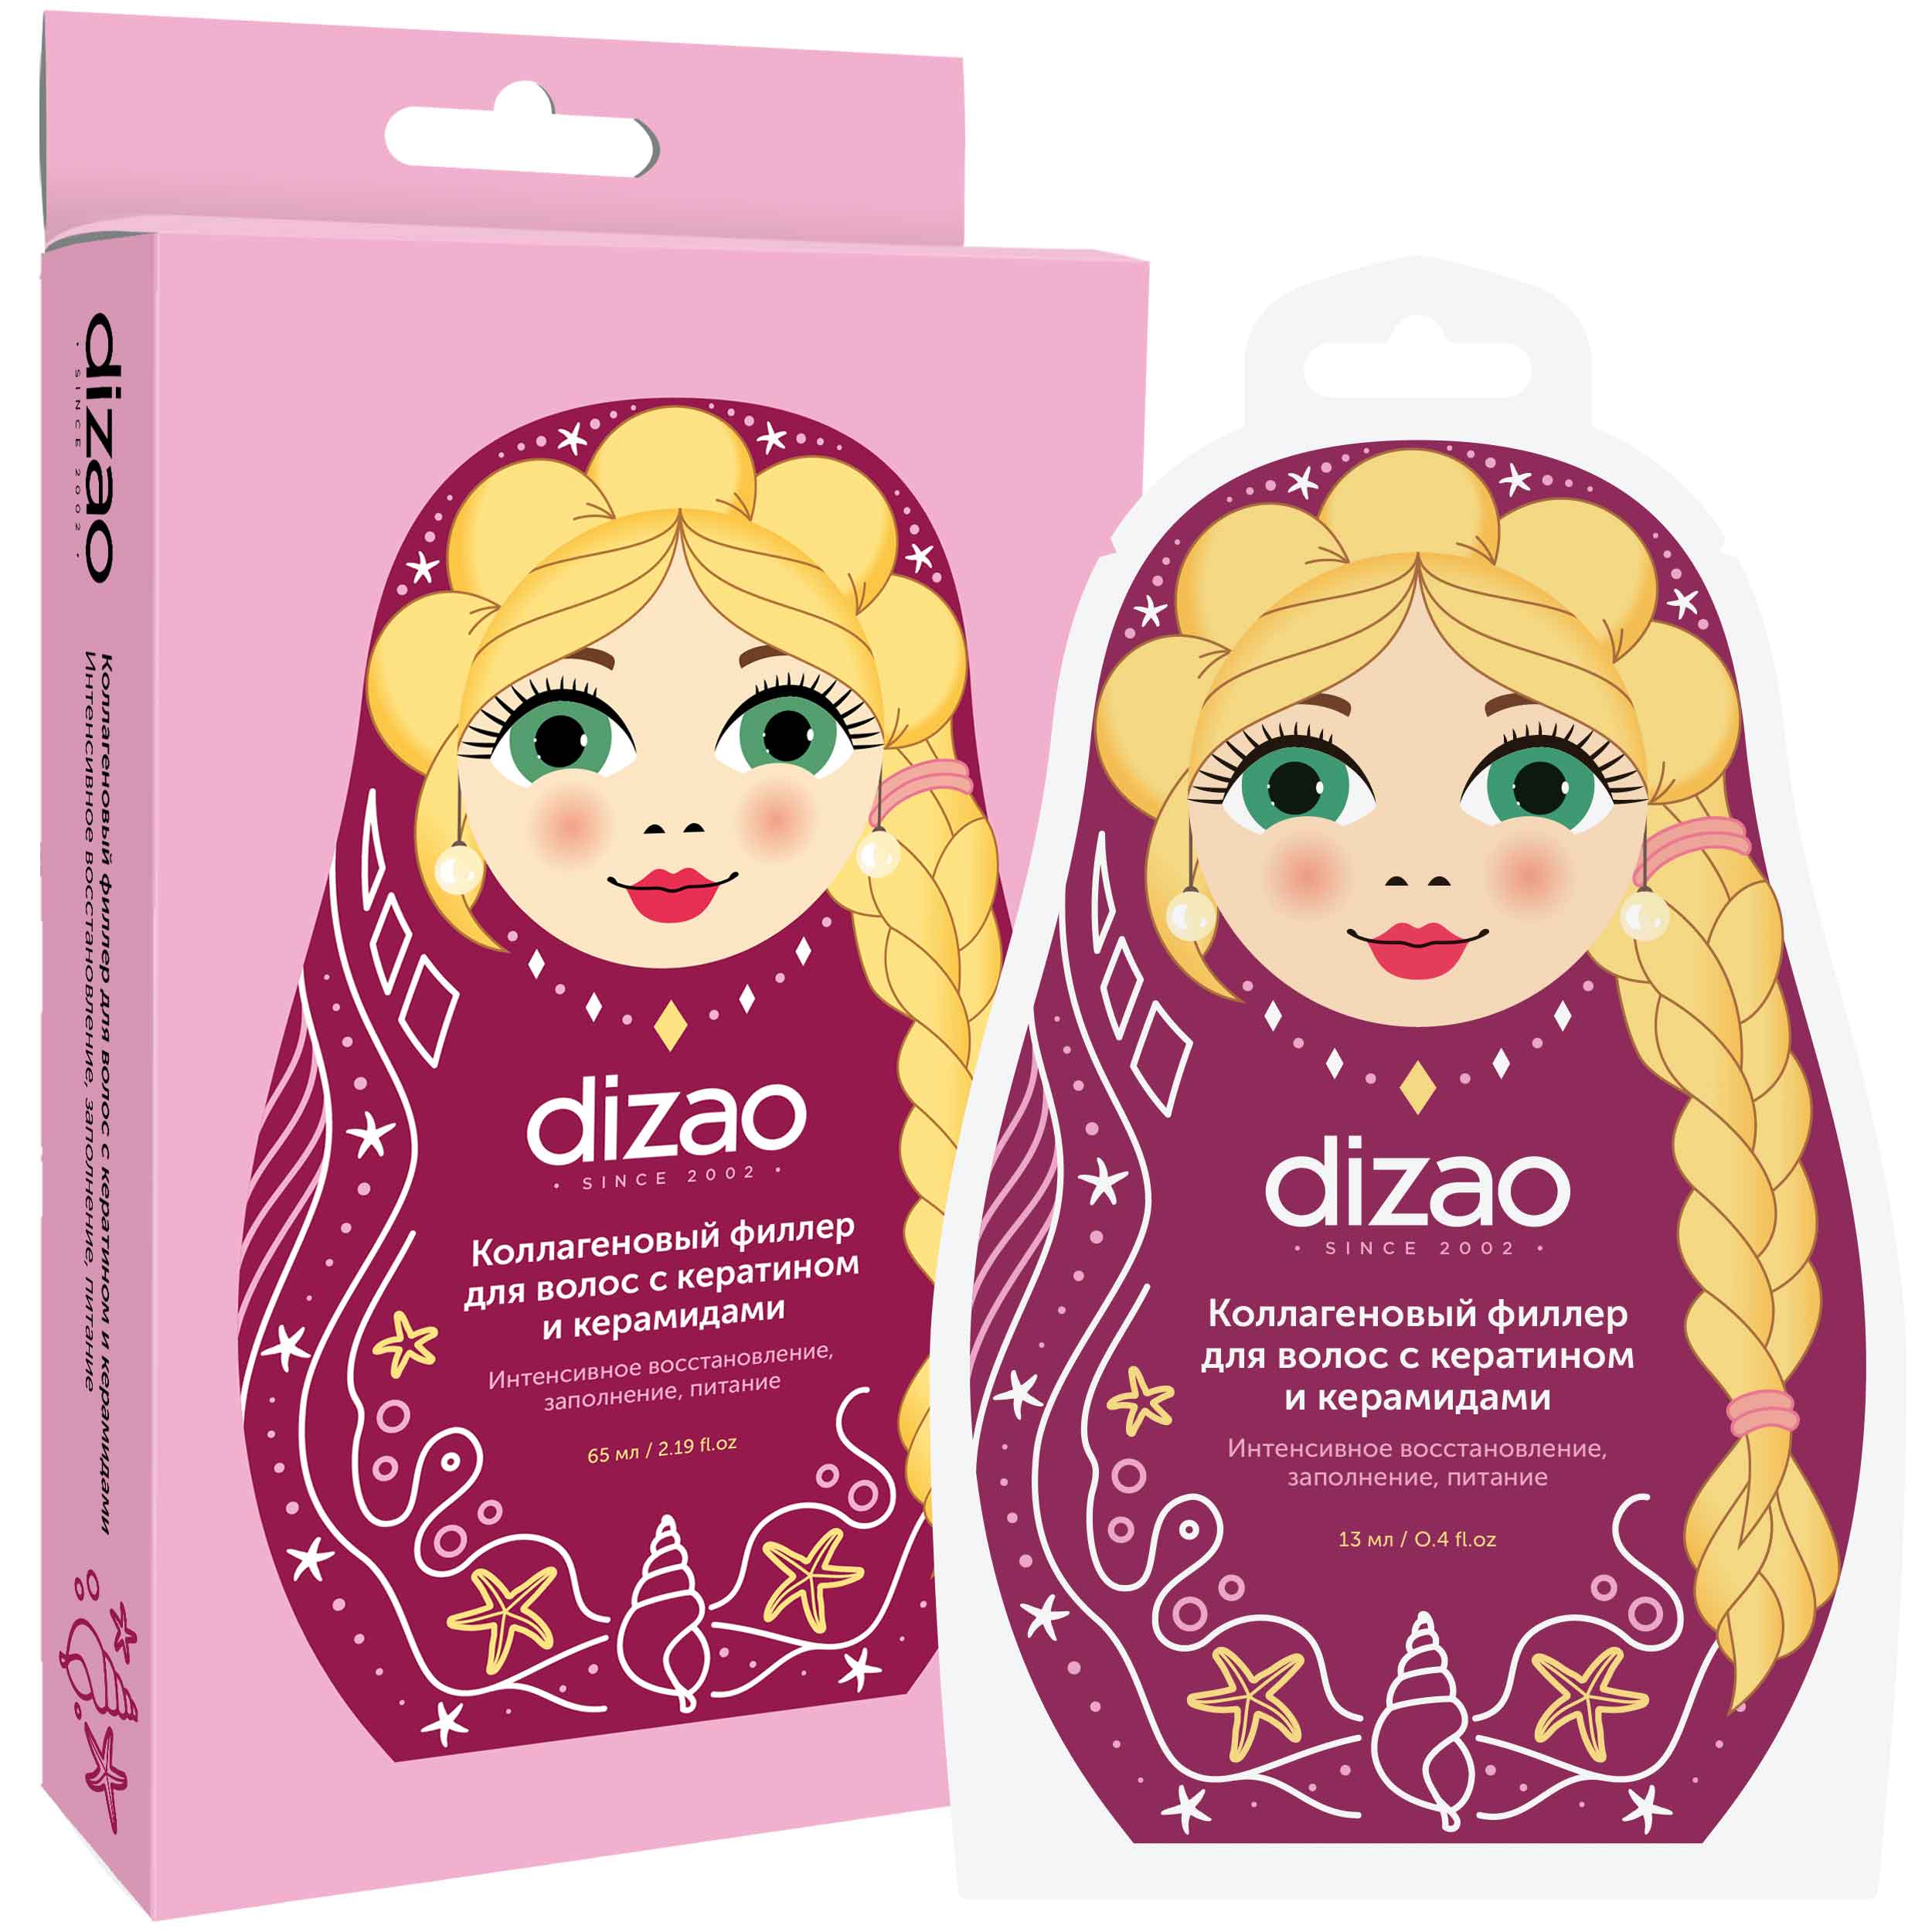 Dizao Коллагеновый филлер для волос с кератином и керамидами,1 шт (Dizao, Для волос) цена и фото